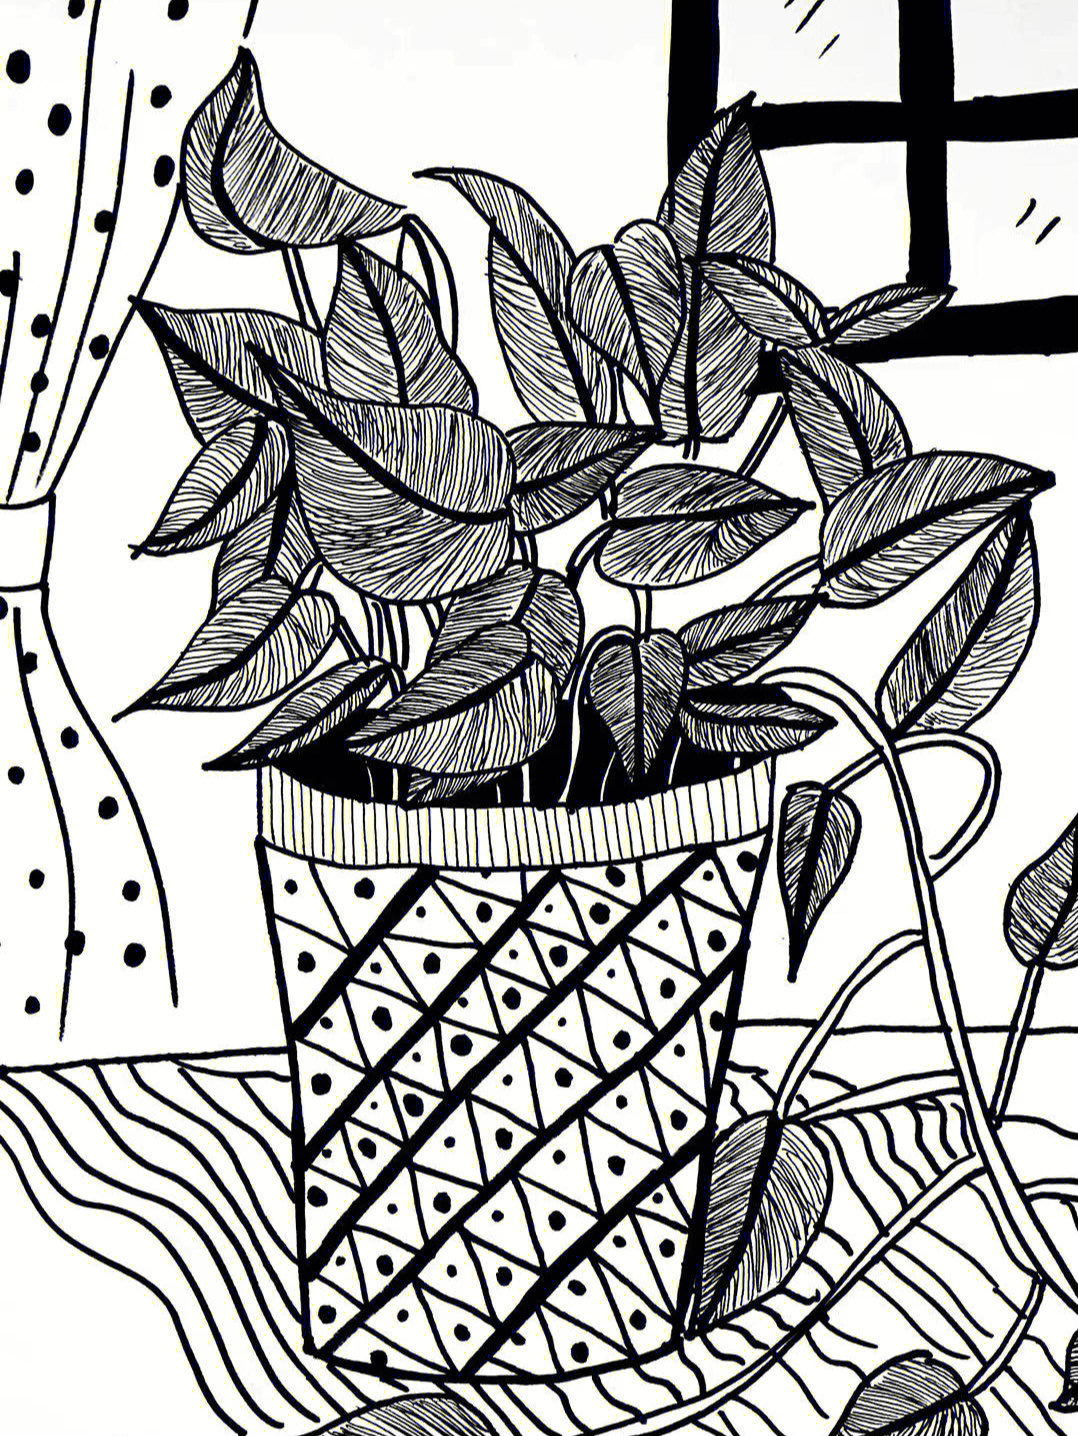 四年级植物写生线描画图片